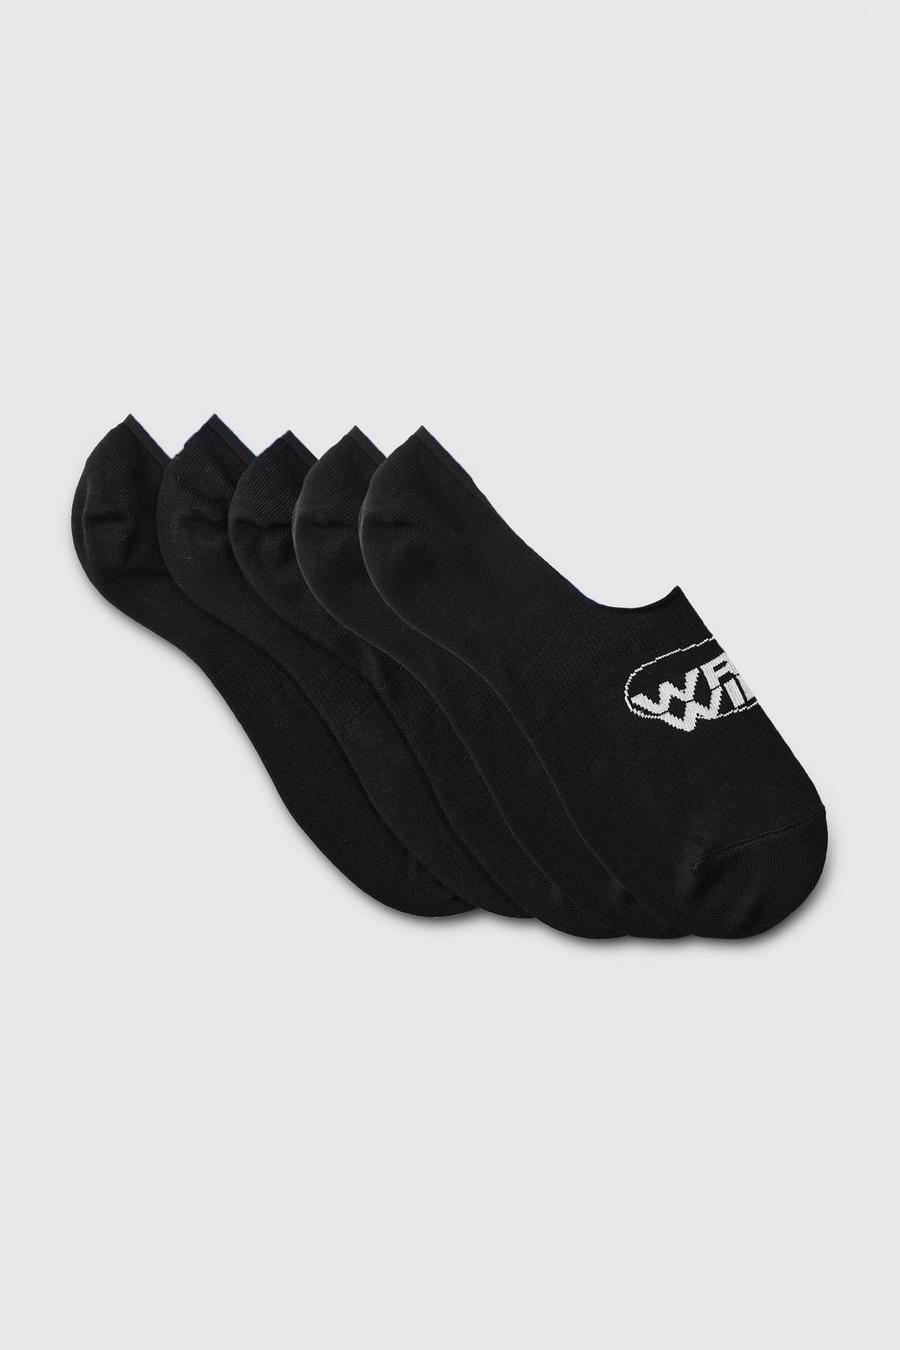 3er-Pack unsichtbare Socken mit Worldwide-Logo, Black